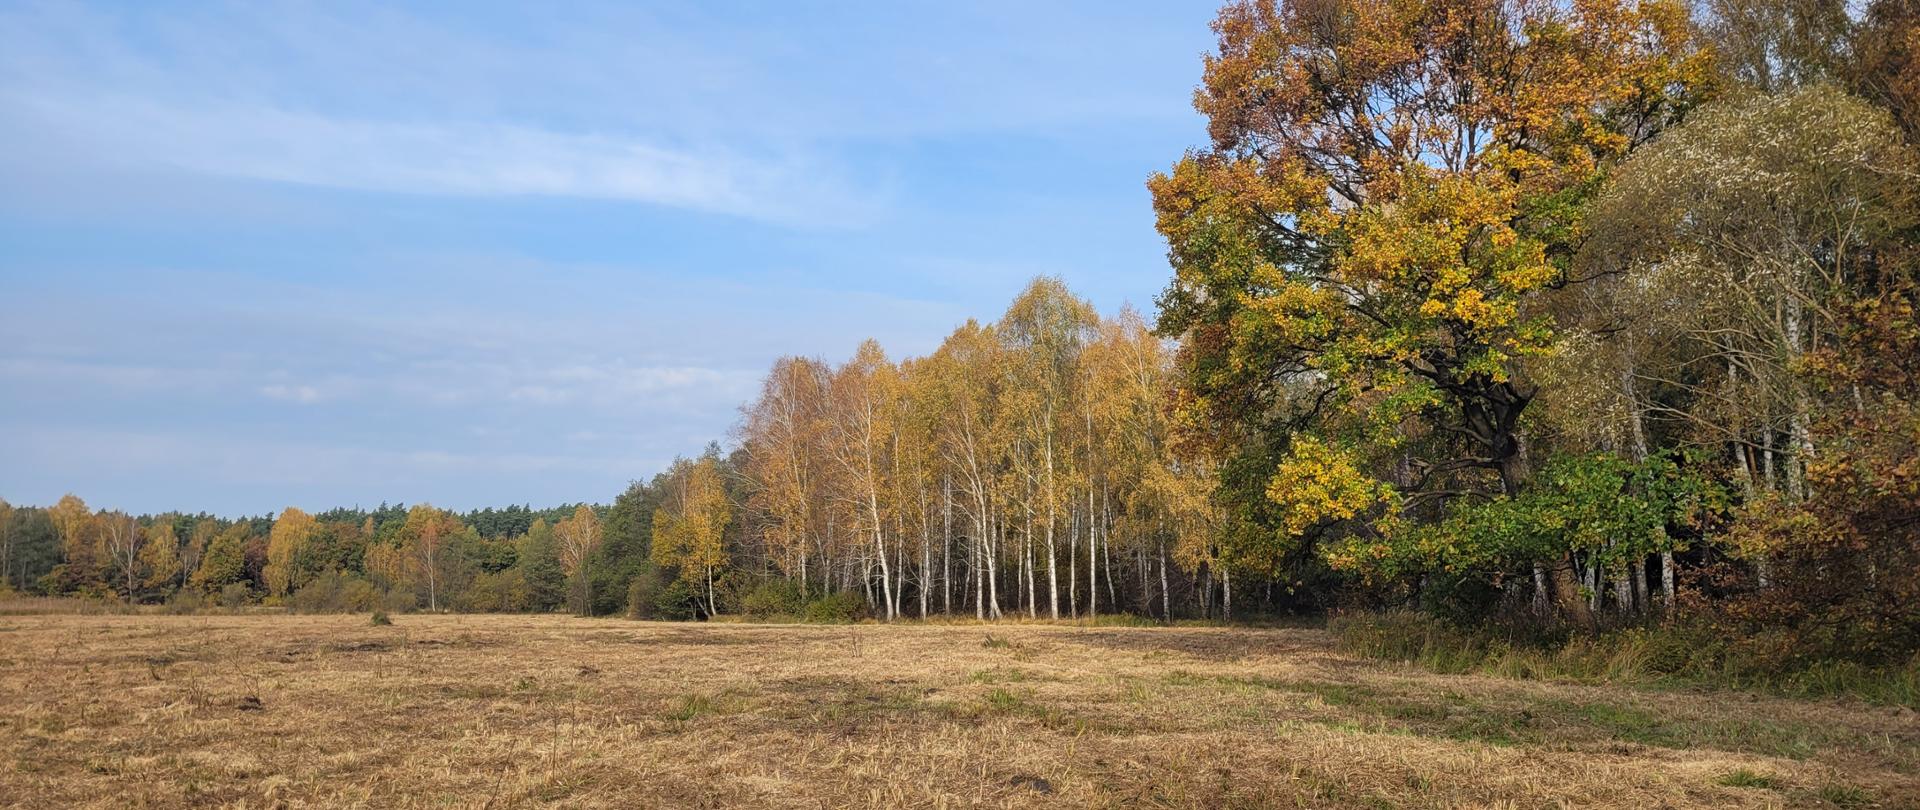 pusty teren skoszona łąka w tle drzewa z kolorowymi liśćmi